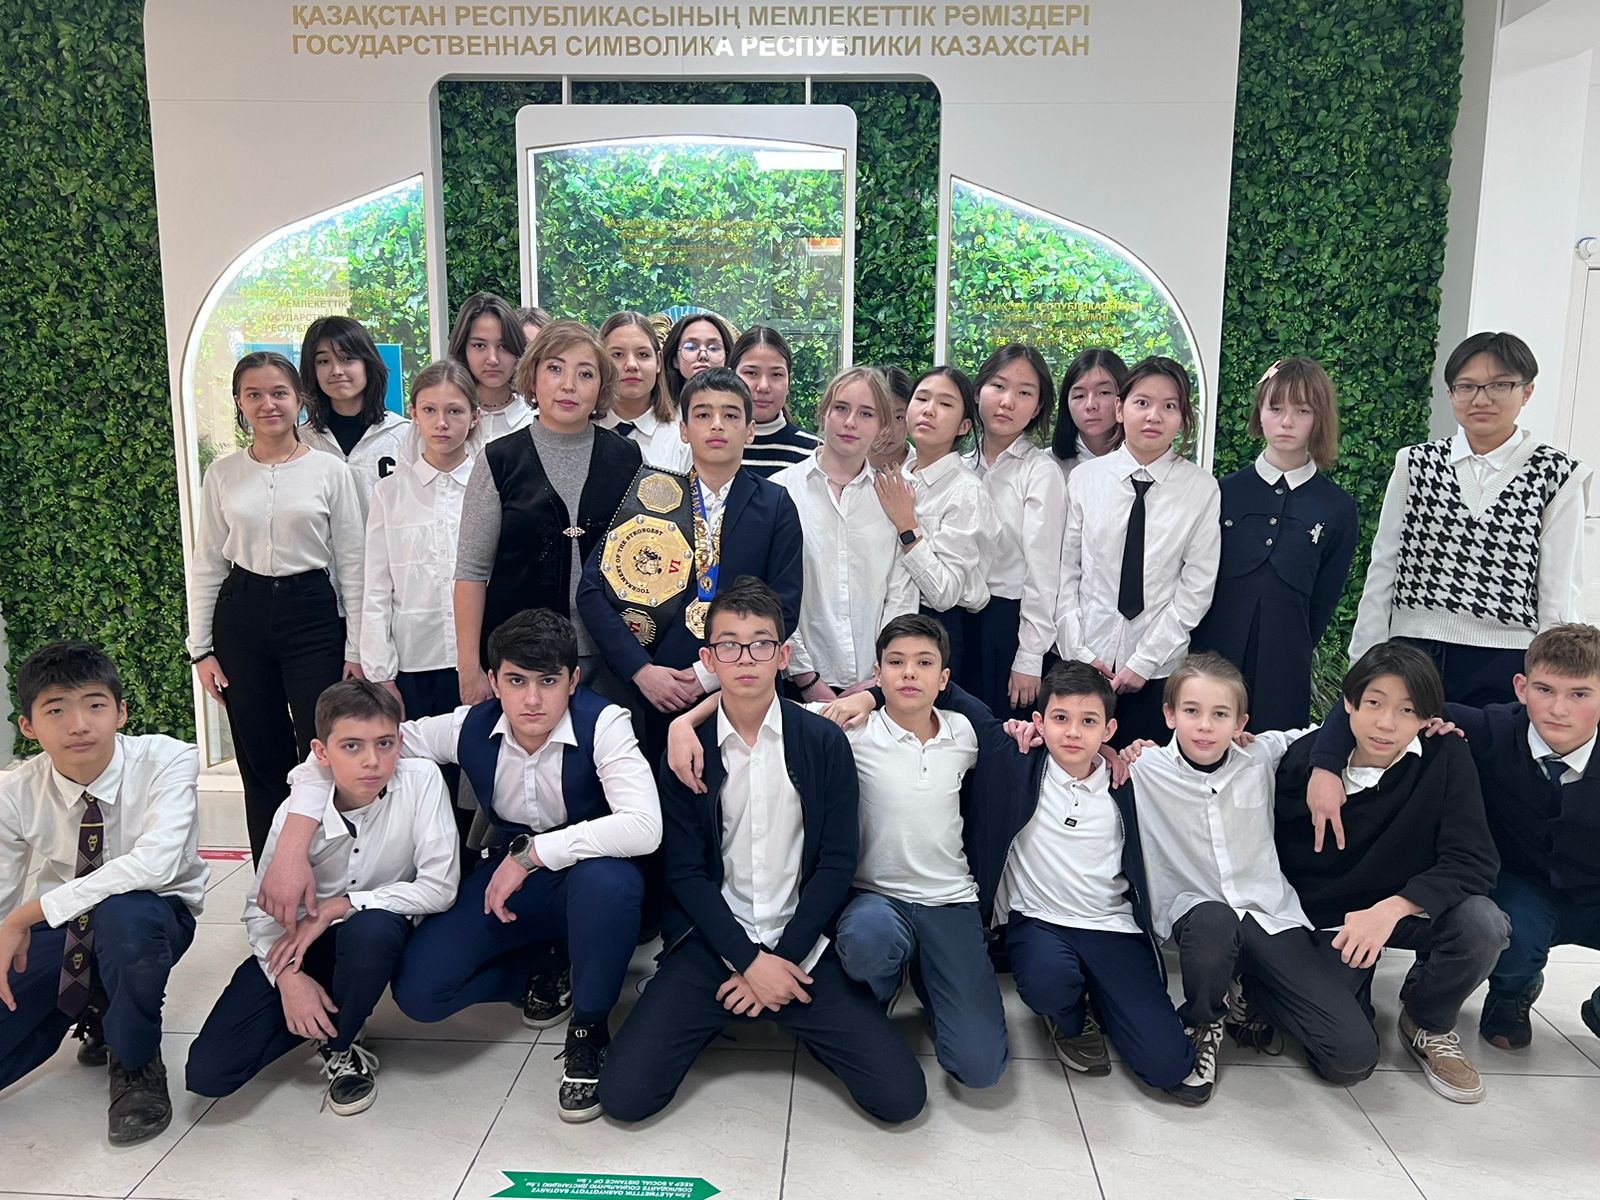 Ашимов Багдасар ученик 7А класса, является победителем турнира сильнейших, Чемпионат Республики Казахстан!